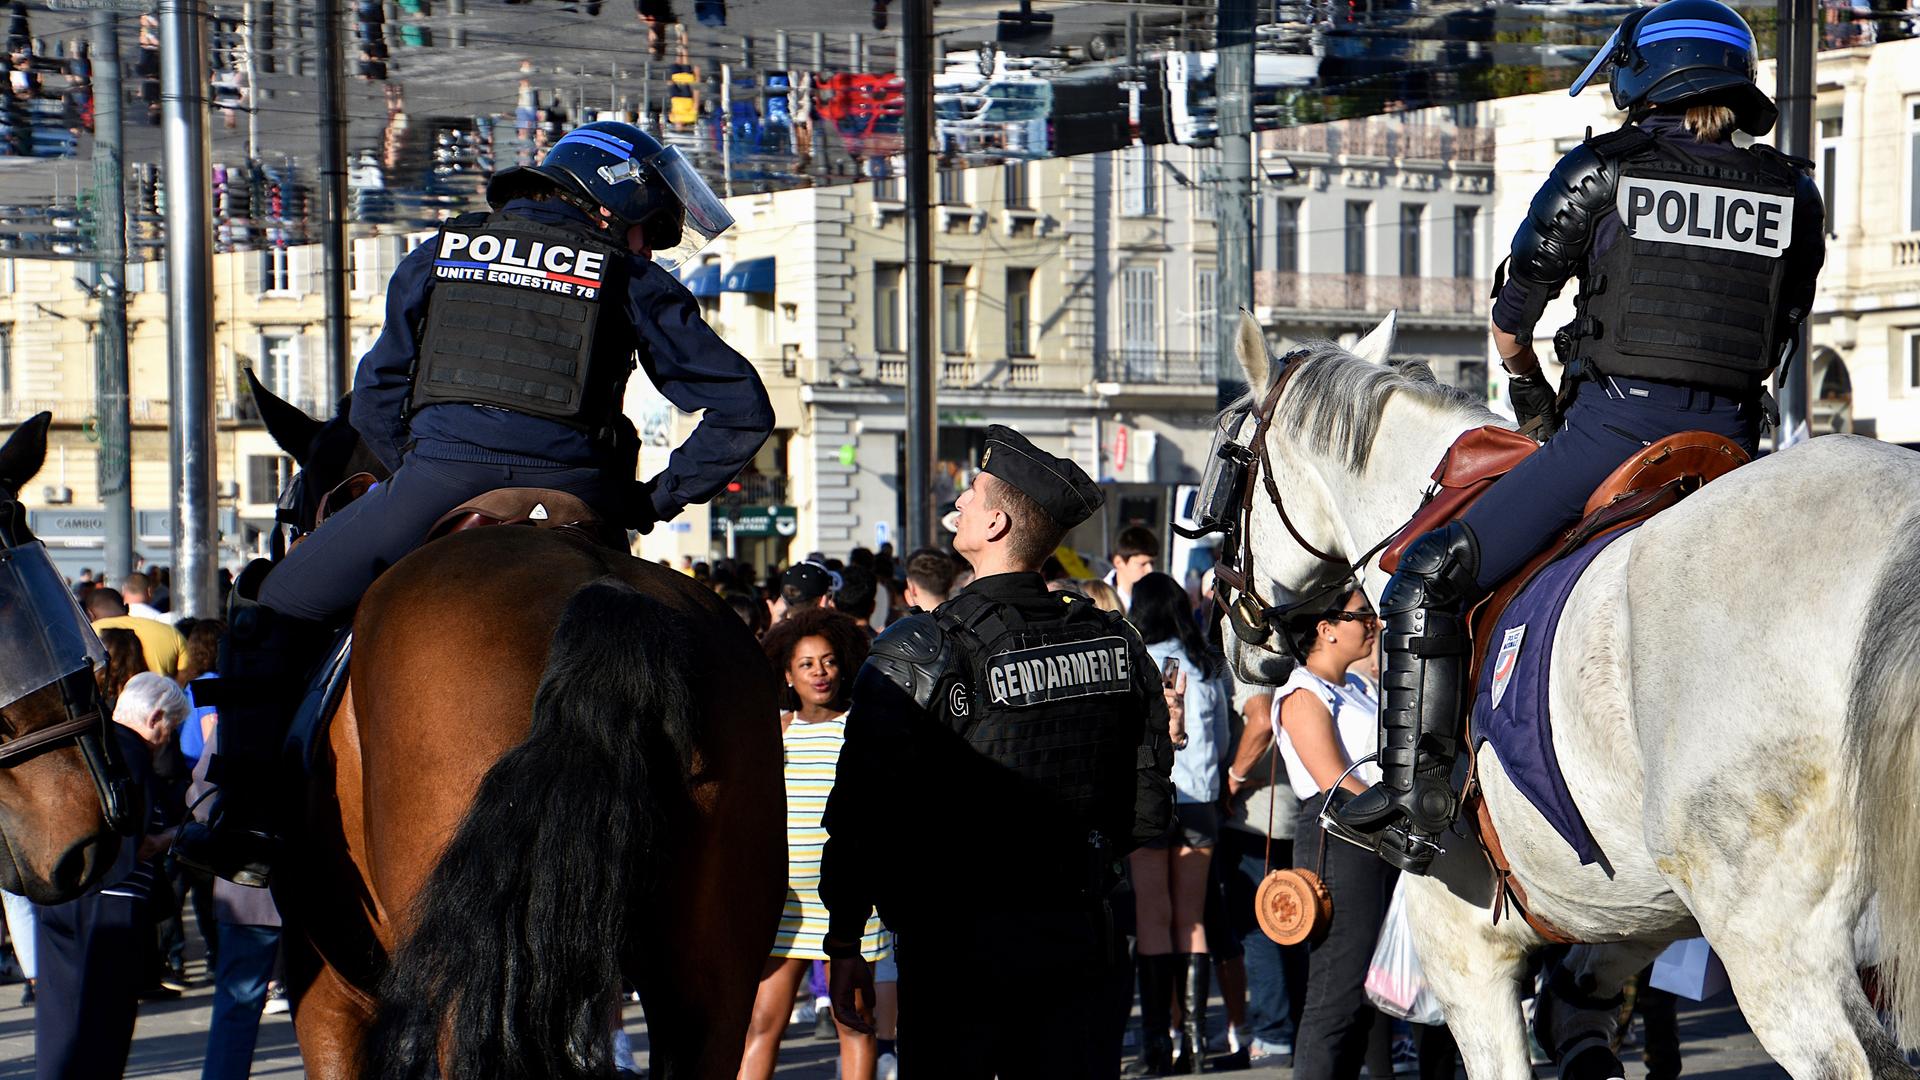 Polizisten in schwerer Schutzausrüstung, teils zu Pferd, in städtischer Umgebung